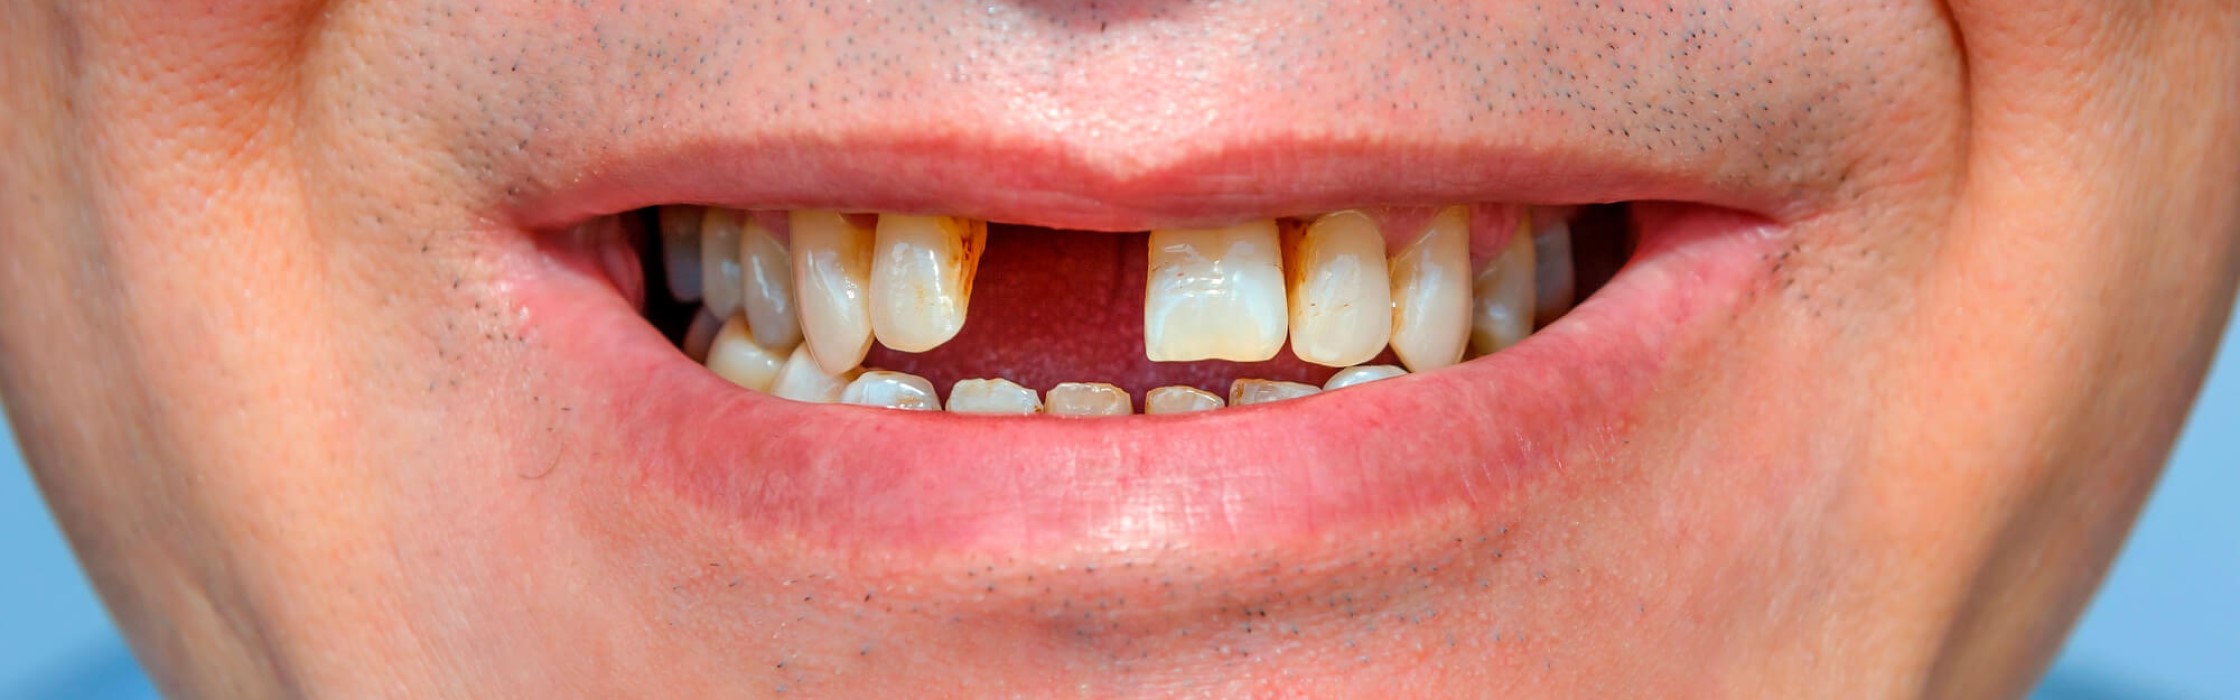 Zahnlücke: Diastema und andere Ursachen